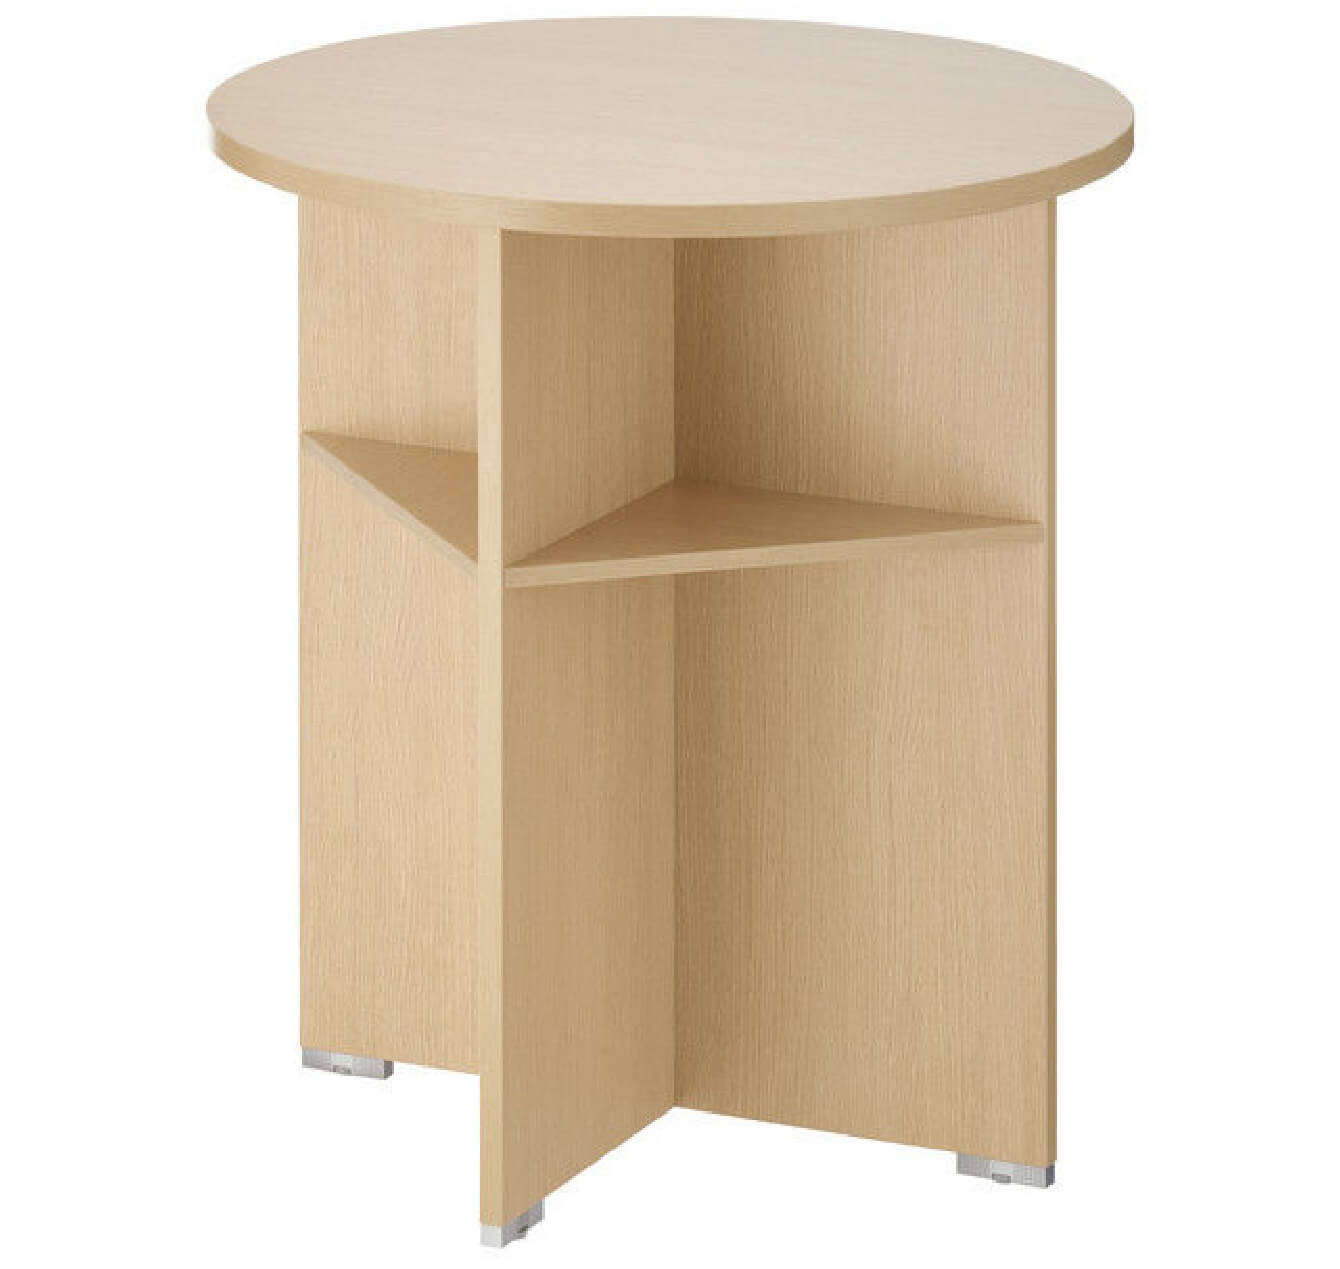 低ホルムアルデヒド素材を使用したイタリア製木製ミーティングテーブル